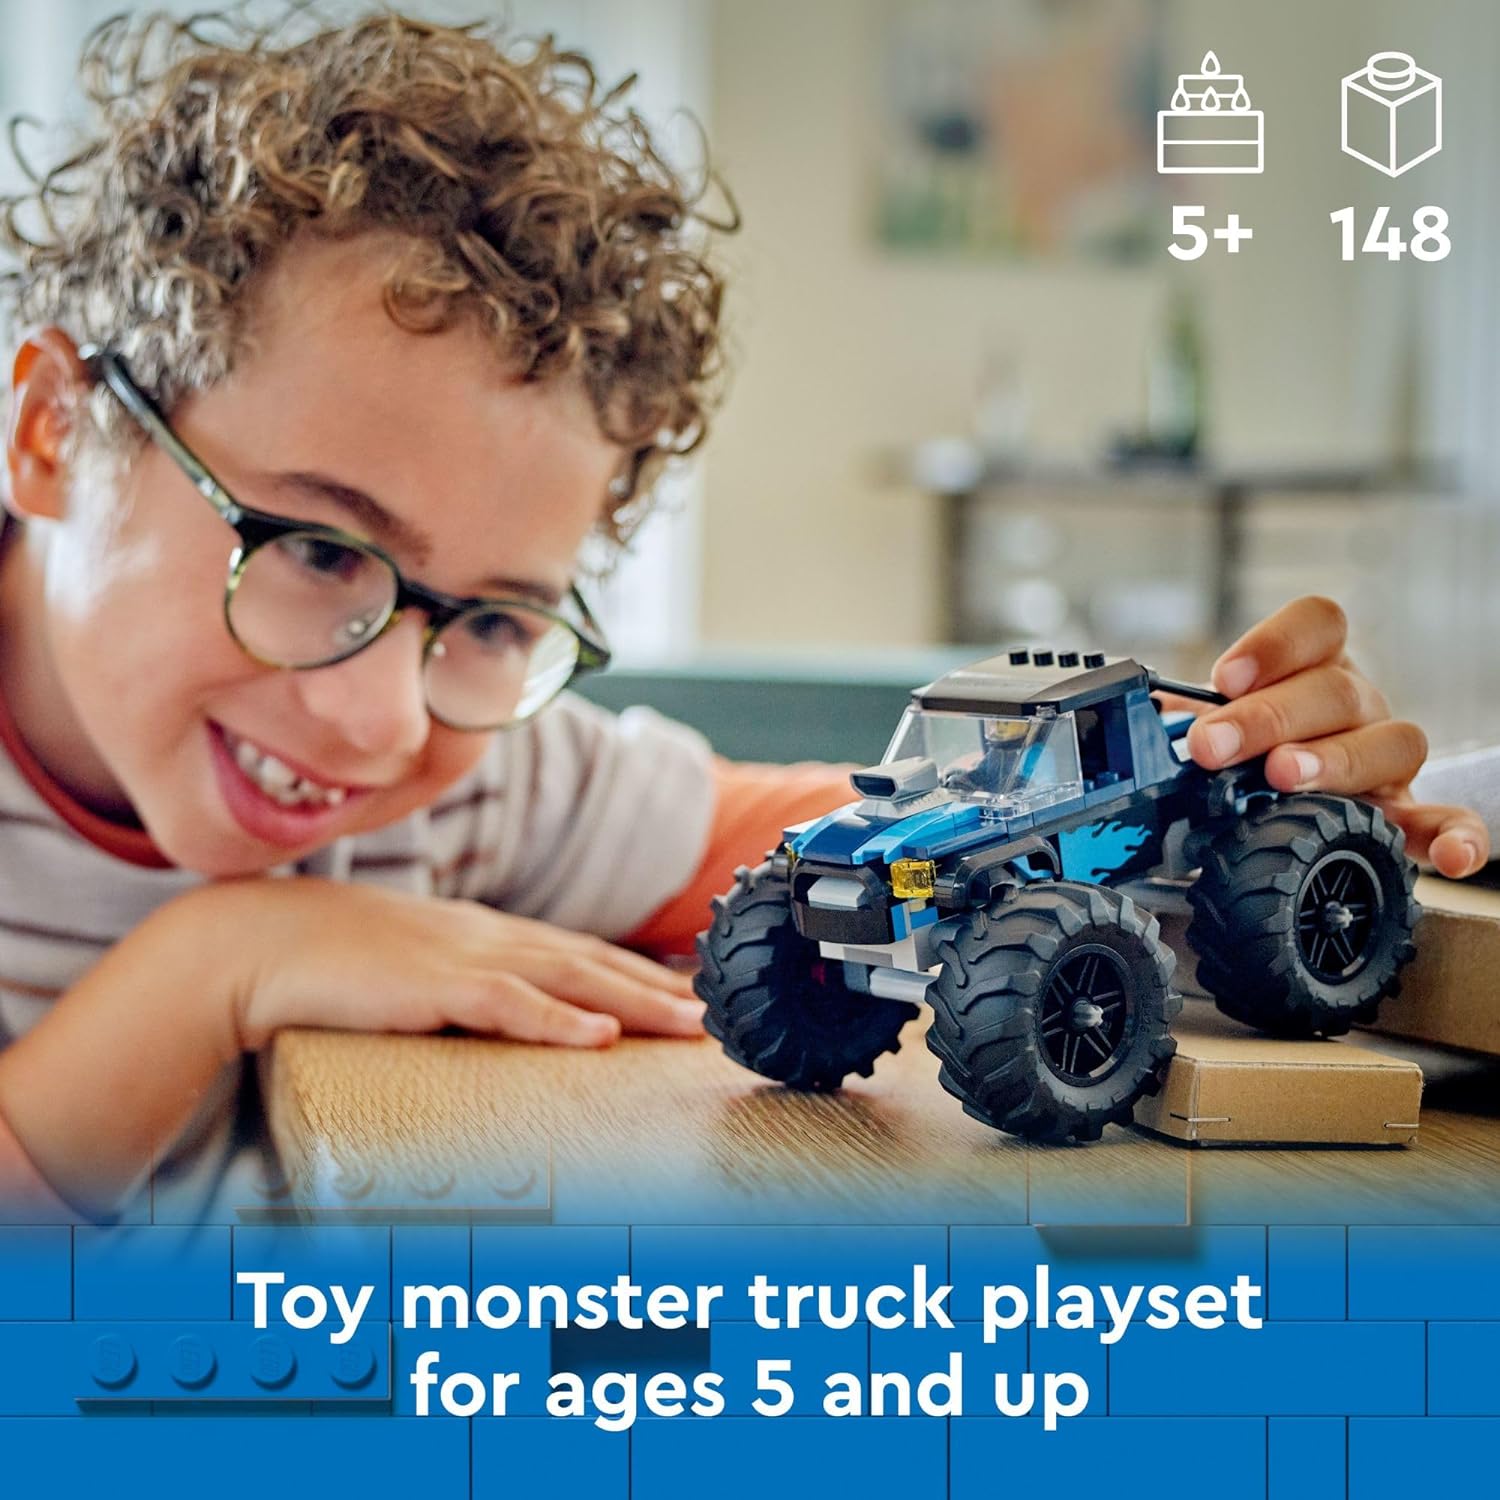 مجموعة لعب شاحنة الوحش الزرقاء للطرق الوعرة من ليجو 60402 مع شخصية سائق صغيرة، ألعاب خيالية للأطفال، هدية ممتعة للأولاد والبنات من سن 5 سنوات فما فوق، شاحنة وحش صغيرة.